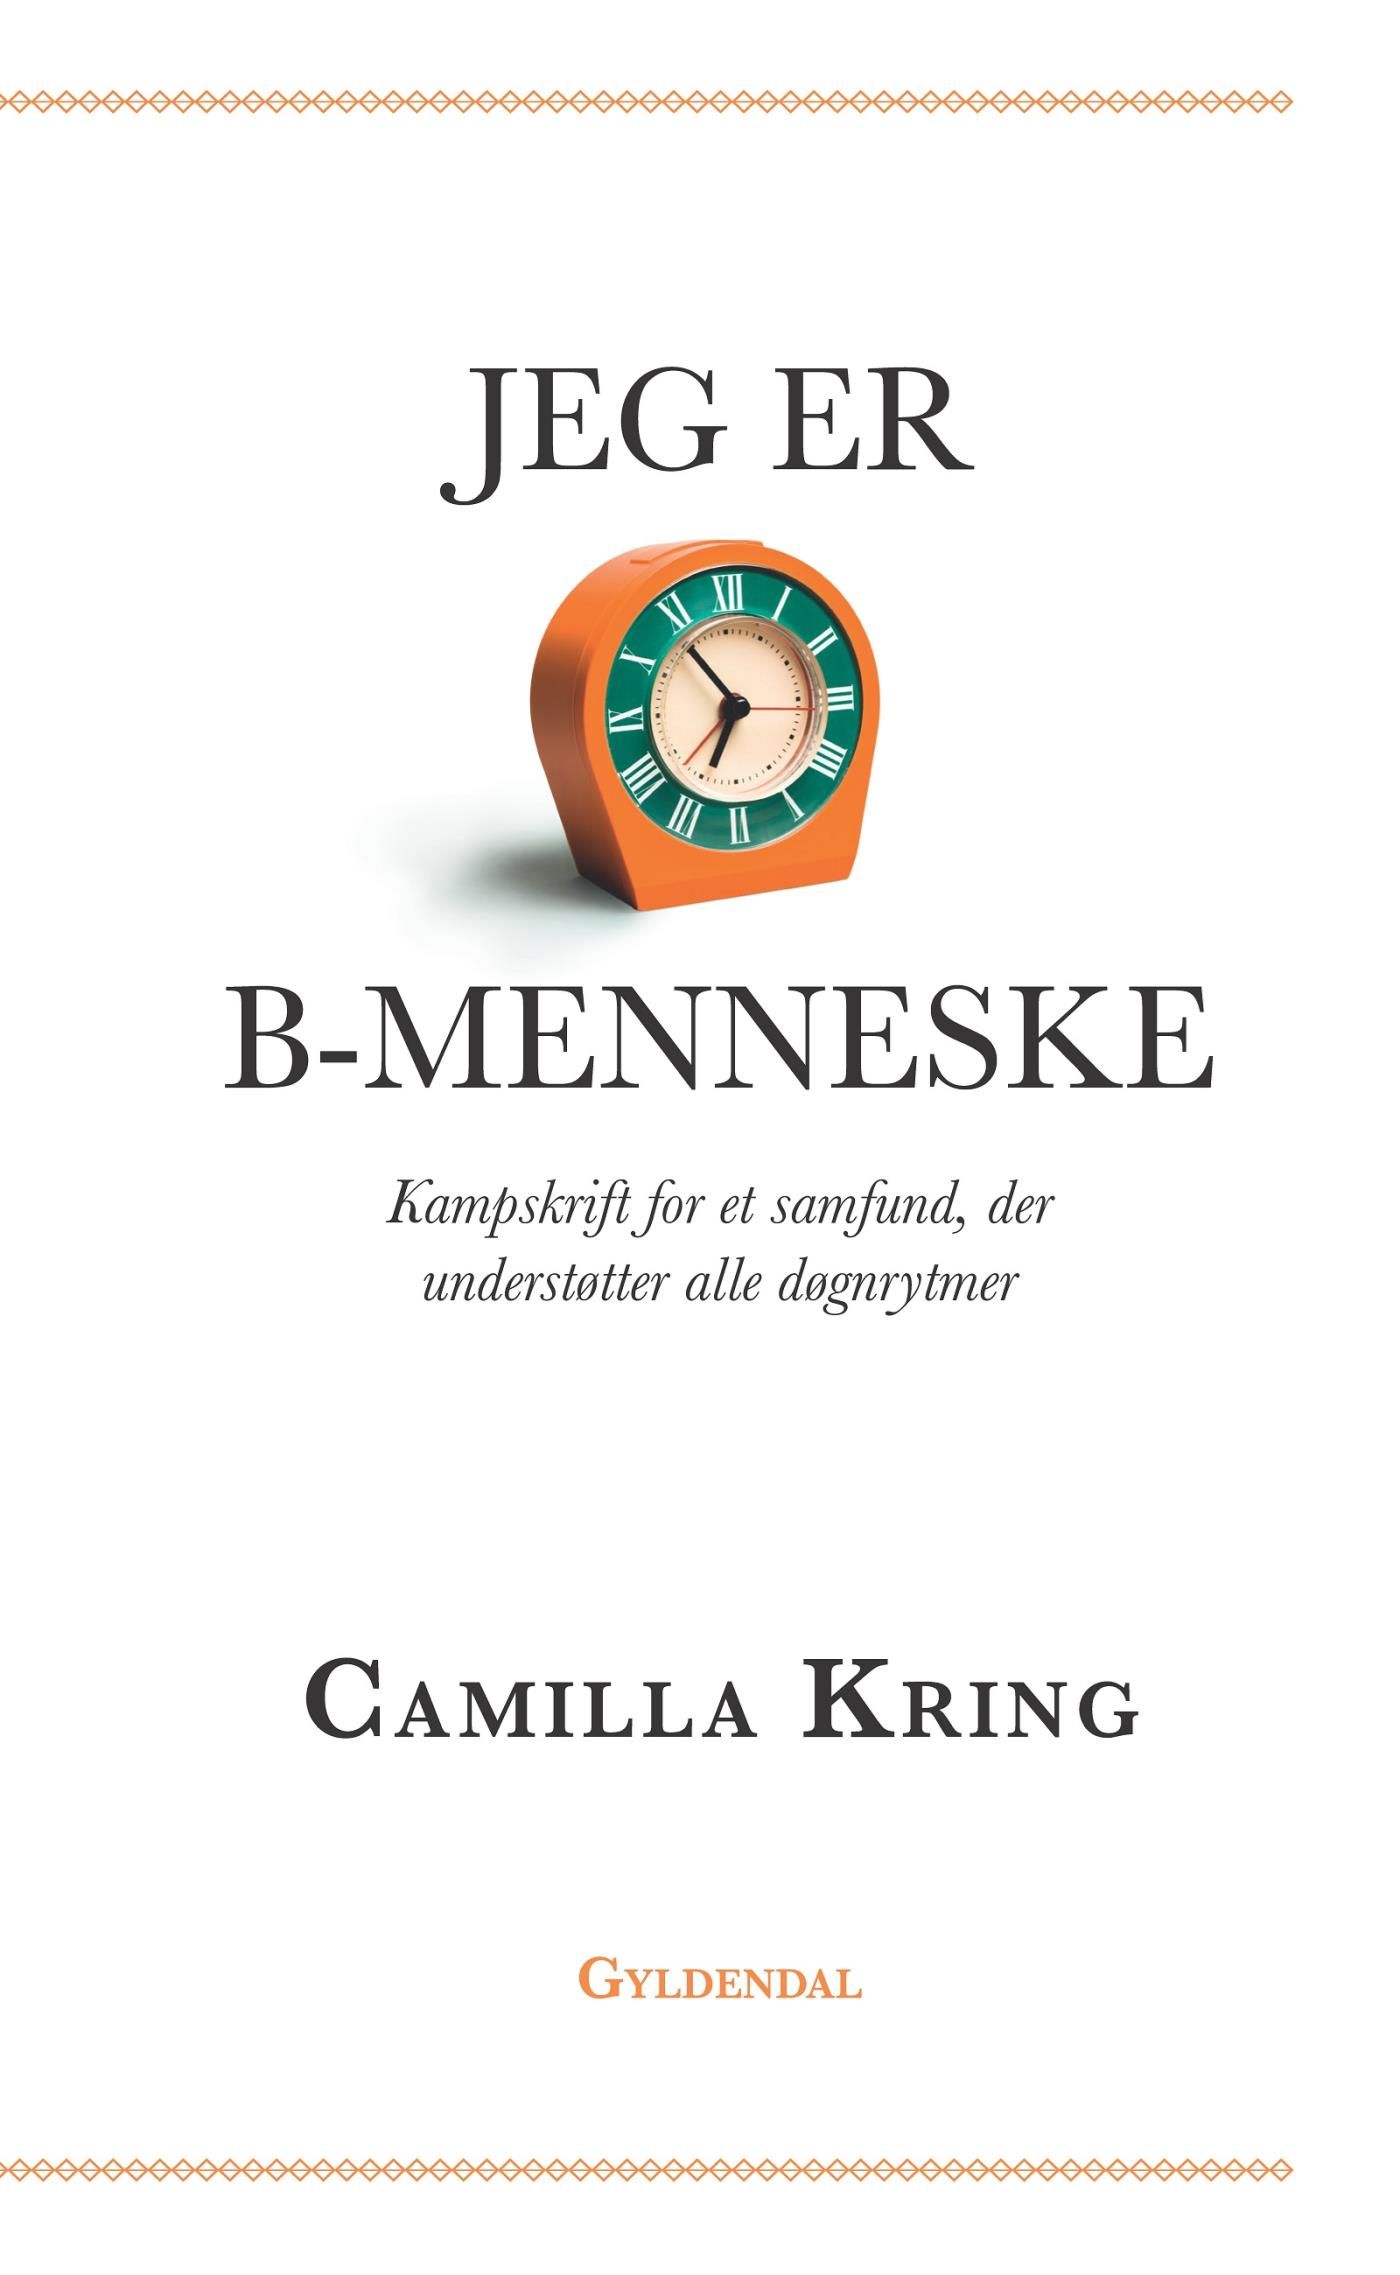 Jeg er B-menneske, e-bok av Camilla Kring